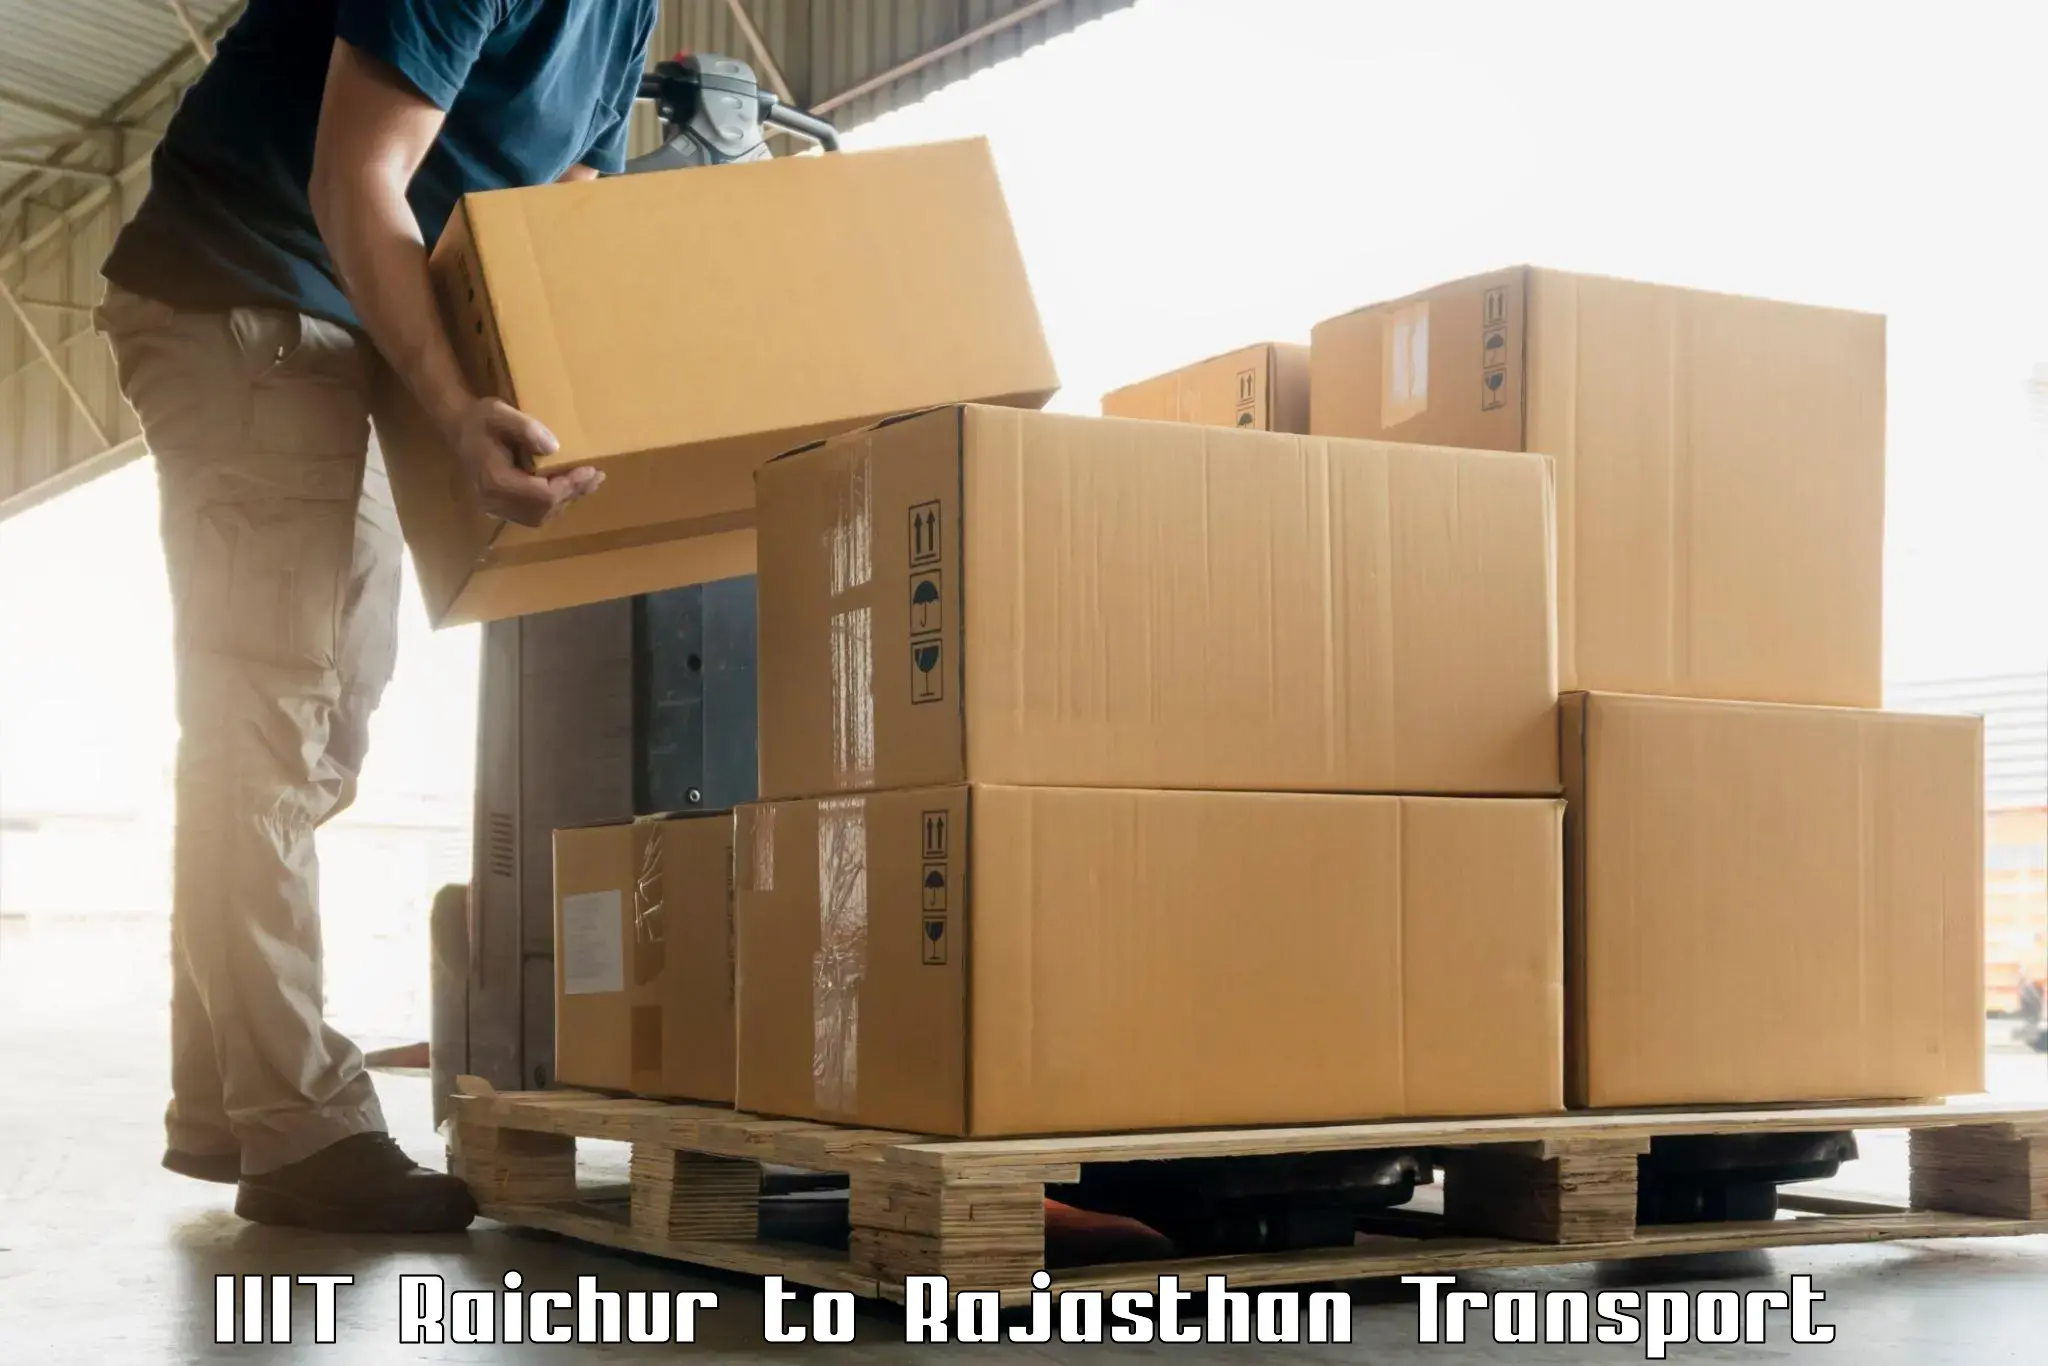 Interstate transport services IIIT Raichur to Rajasthan